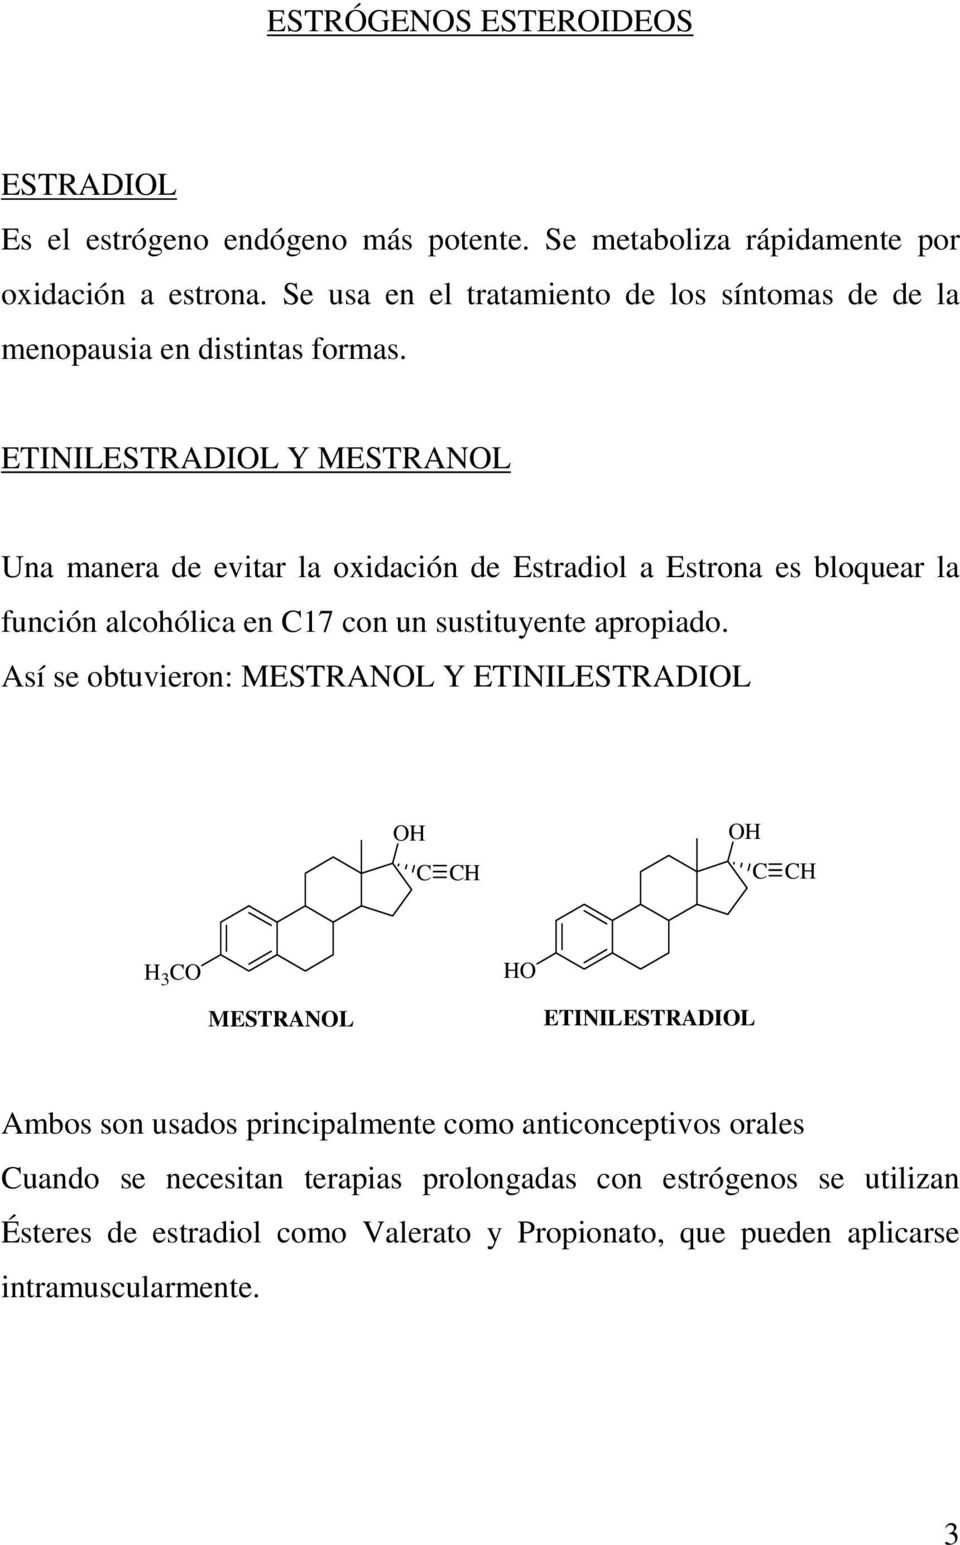 ETINILESTRADIL Y MESTRANL Una manera de evitar la oxidación de Estradiol a Estrona es bloquear la función alcohólica en C17 con un sustituyente apropiado.